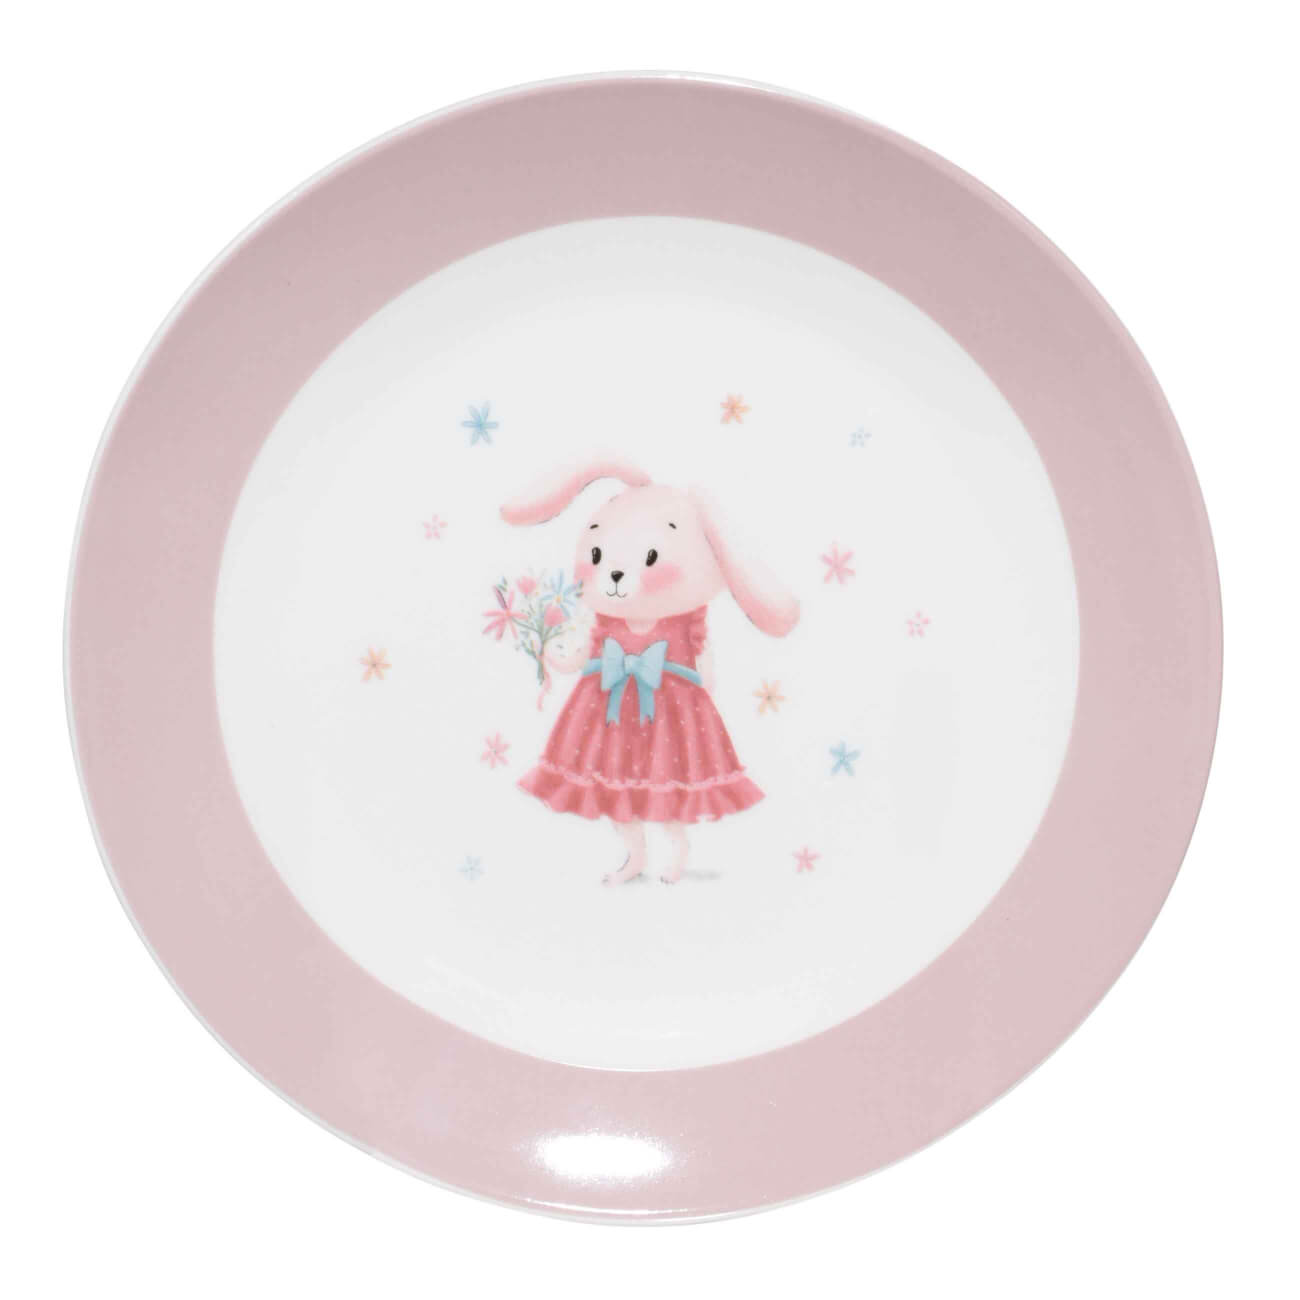 Тарелка закусочная, детская, 19 см, фарфор N, бело-розовая, Крольчиха с цветами, Ideas life тарелка закусочная maxwell